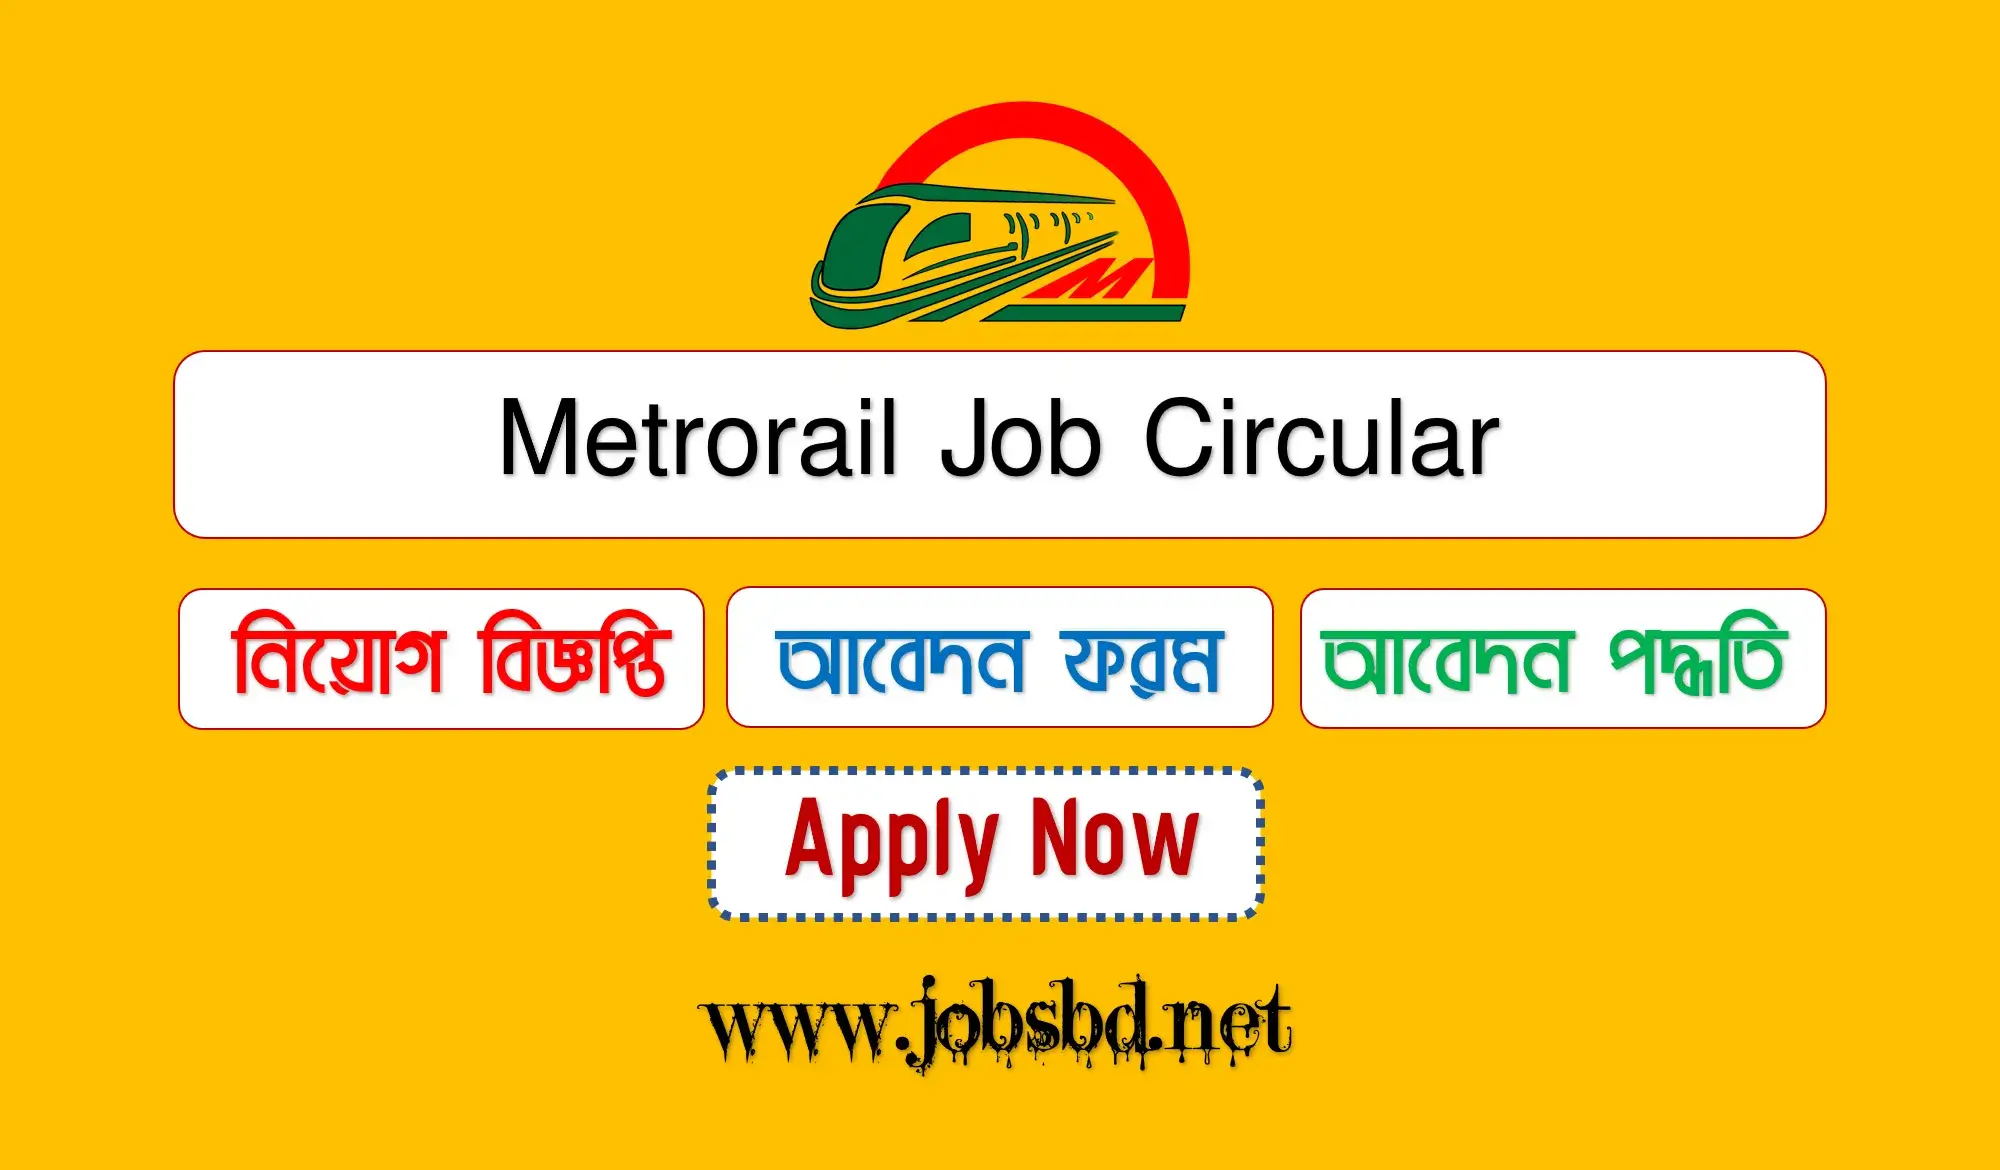 Metrorail Job Circular 2022